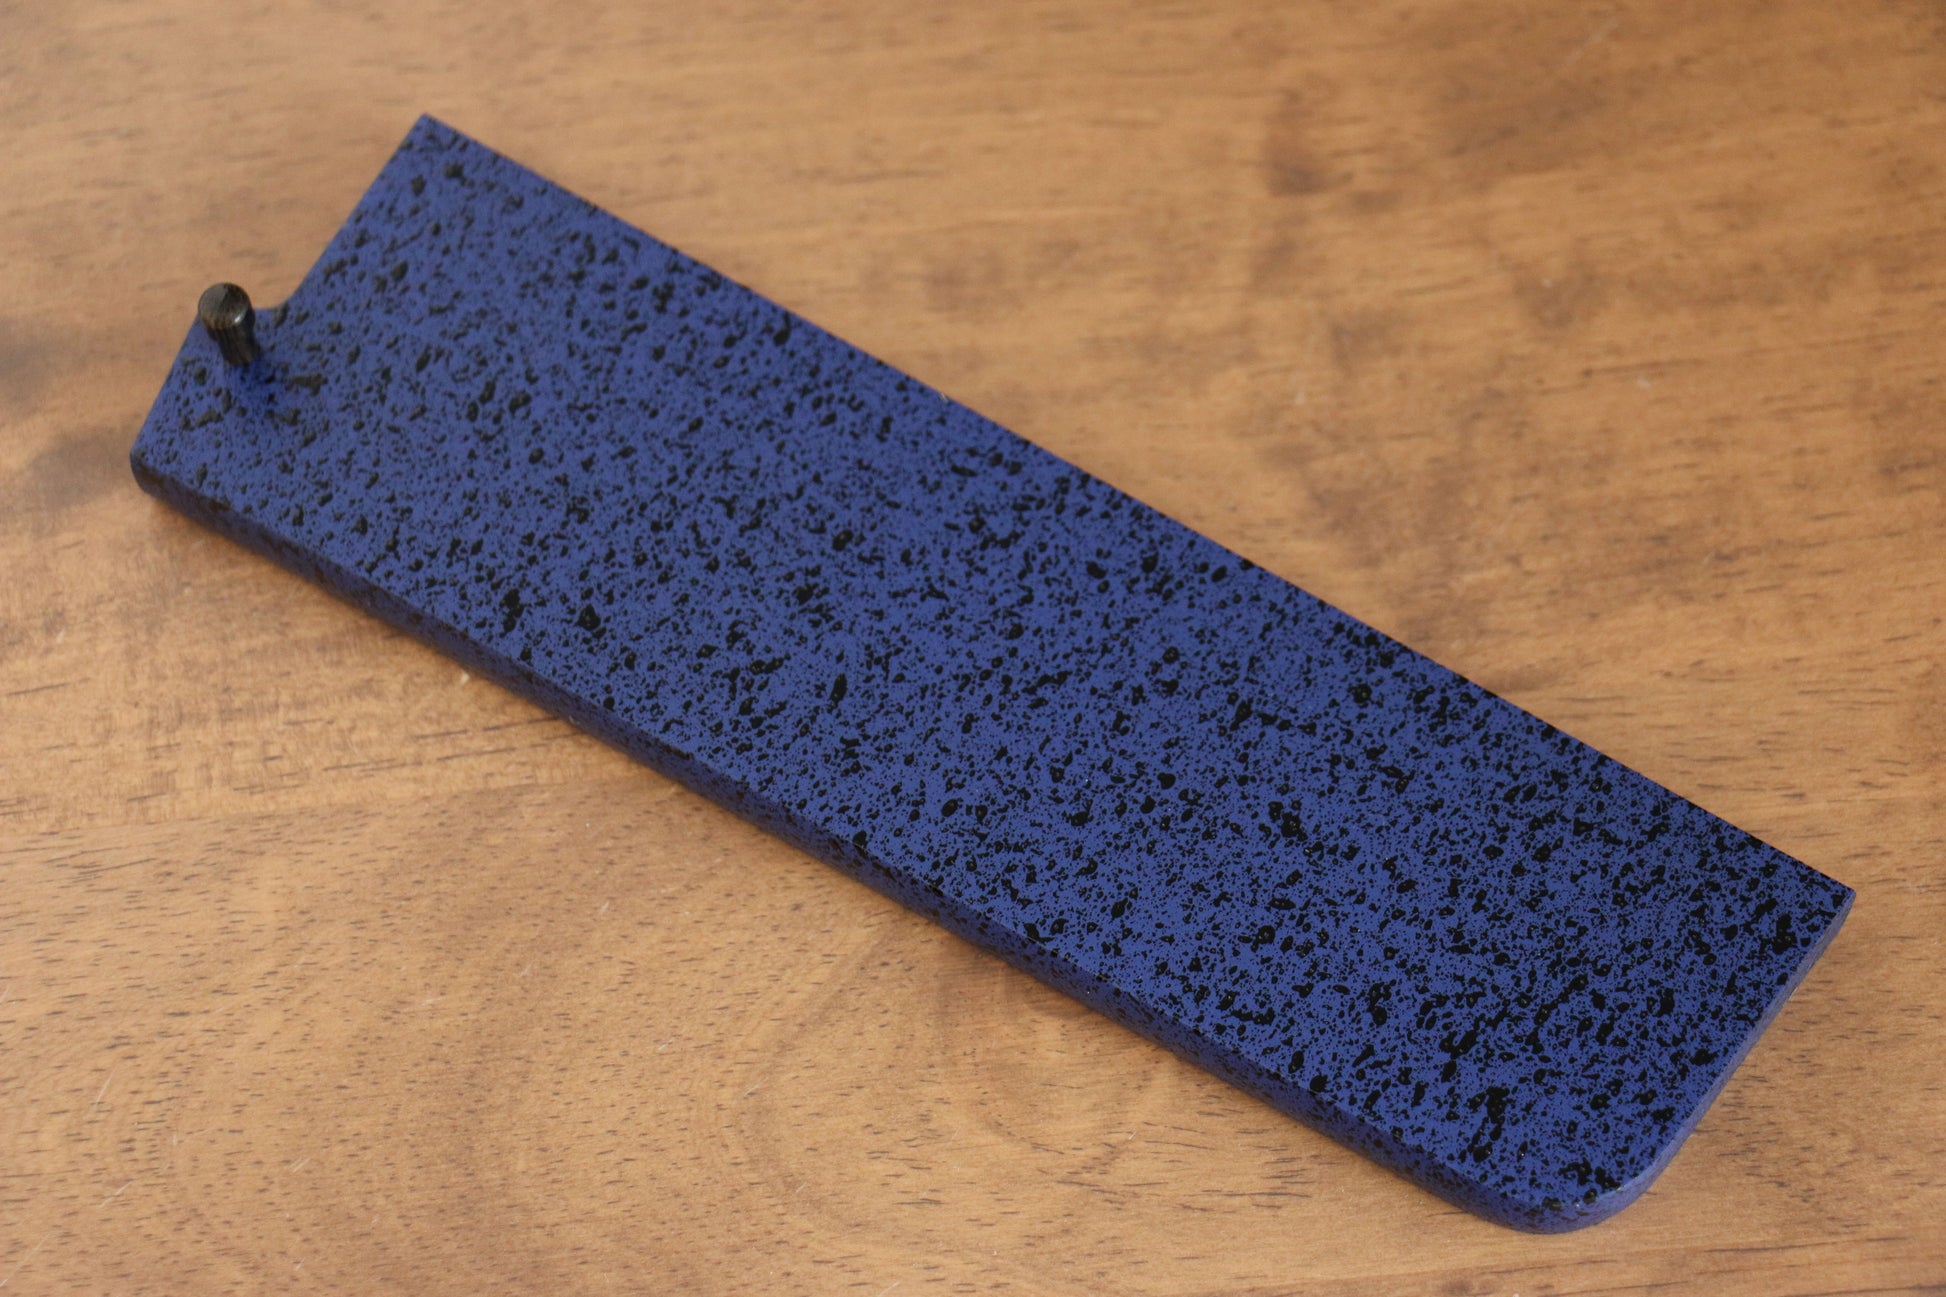 (中) 青合板 鞘 180mm 菜切包丁用 合板ピン付き - 清助刃物